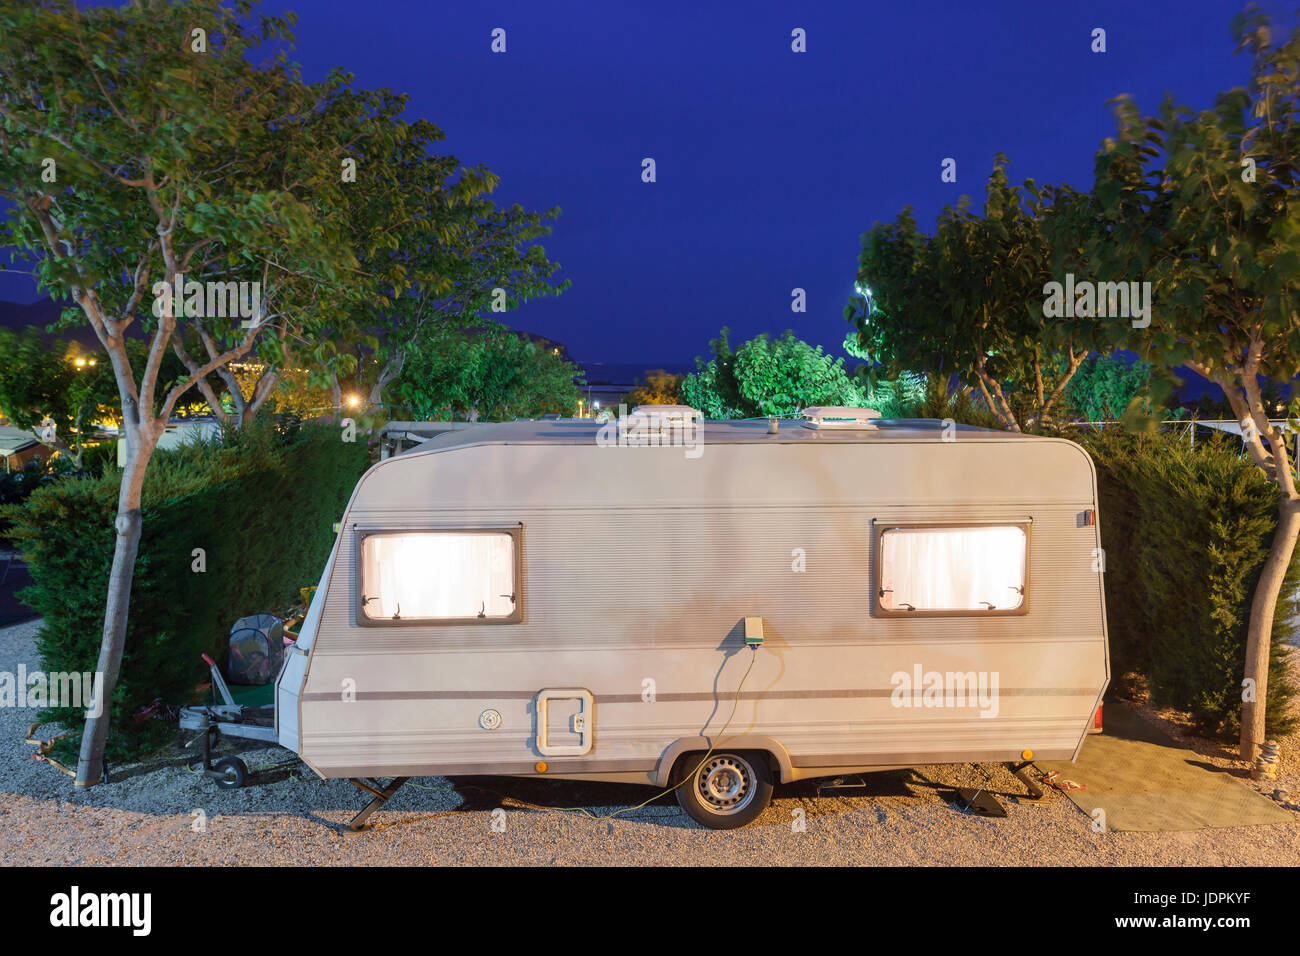 Wohnmobil oder Wohnwagen auf einem Campingplatz nachts beleuchtet Stockfoto